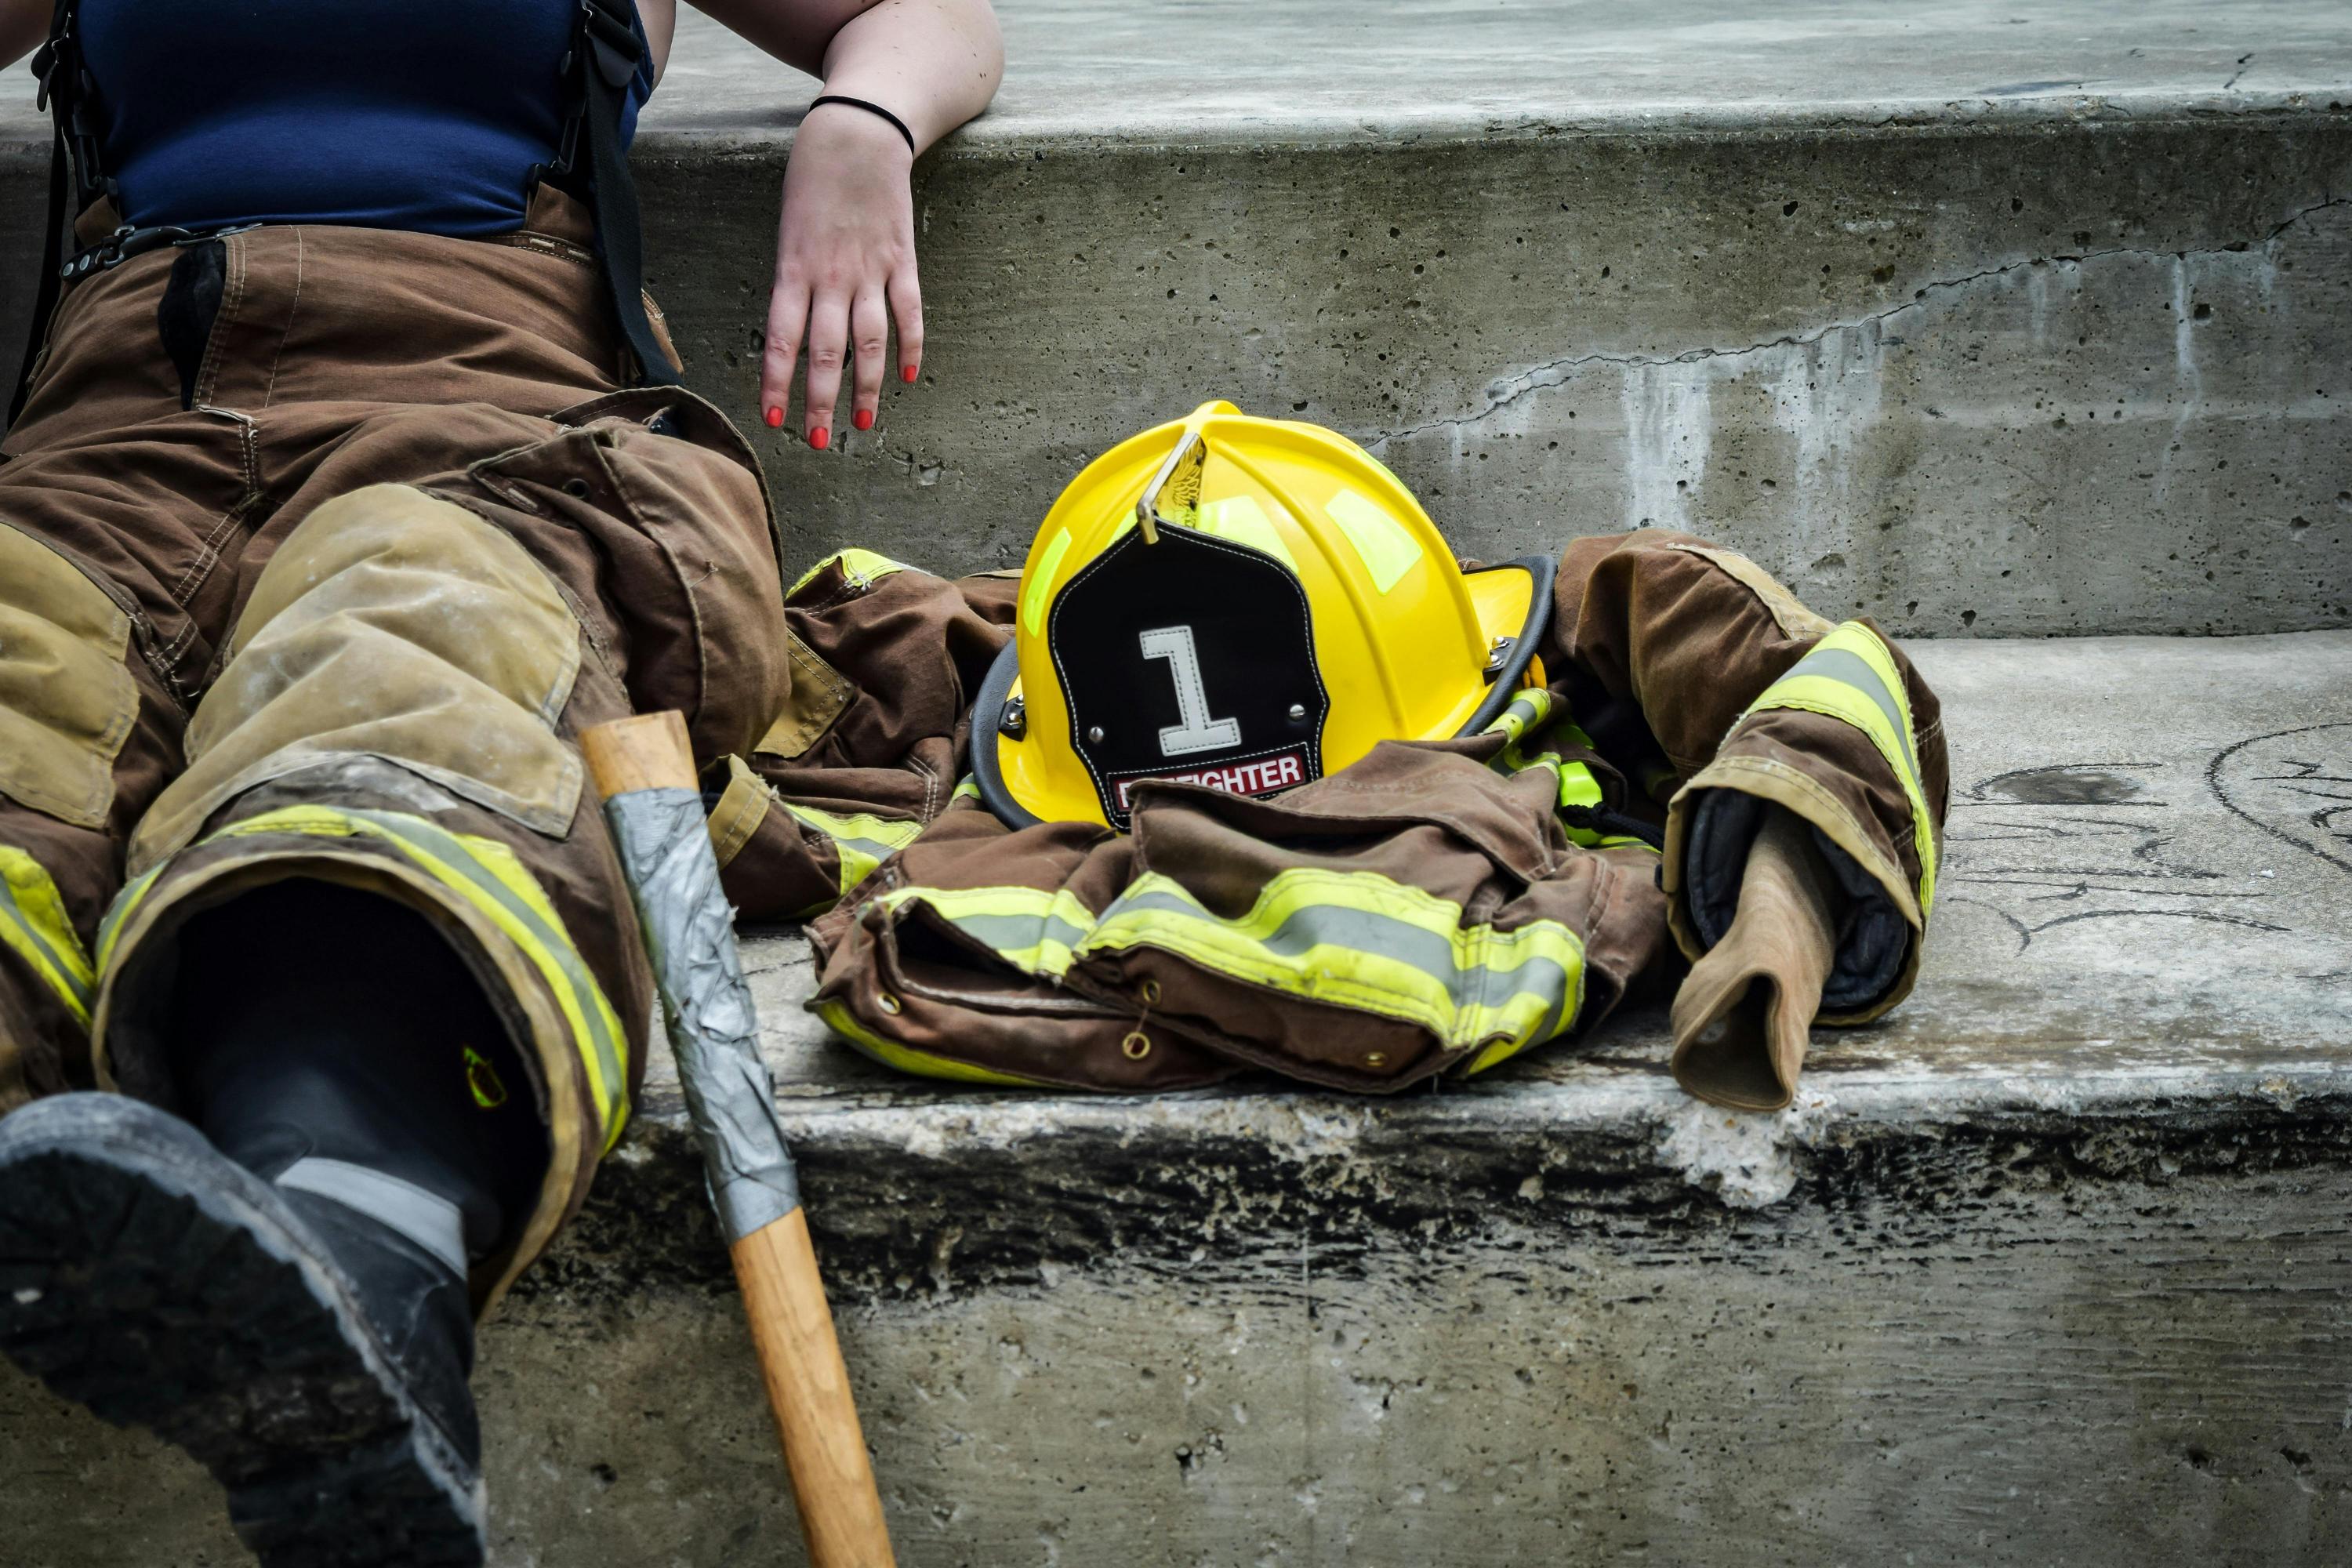 Szkolenia i kwalifikacje strażaków na świecie